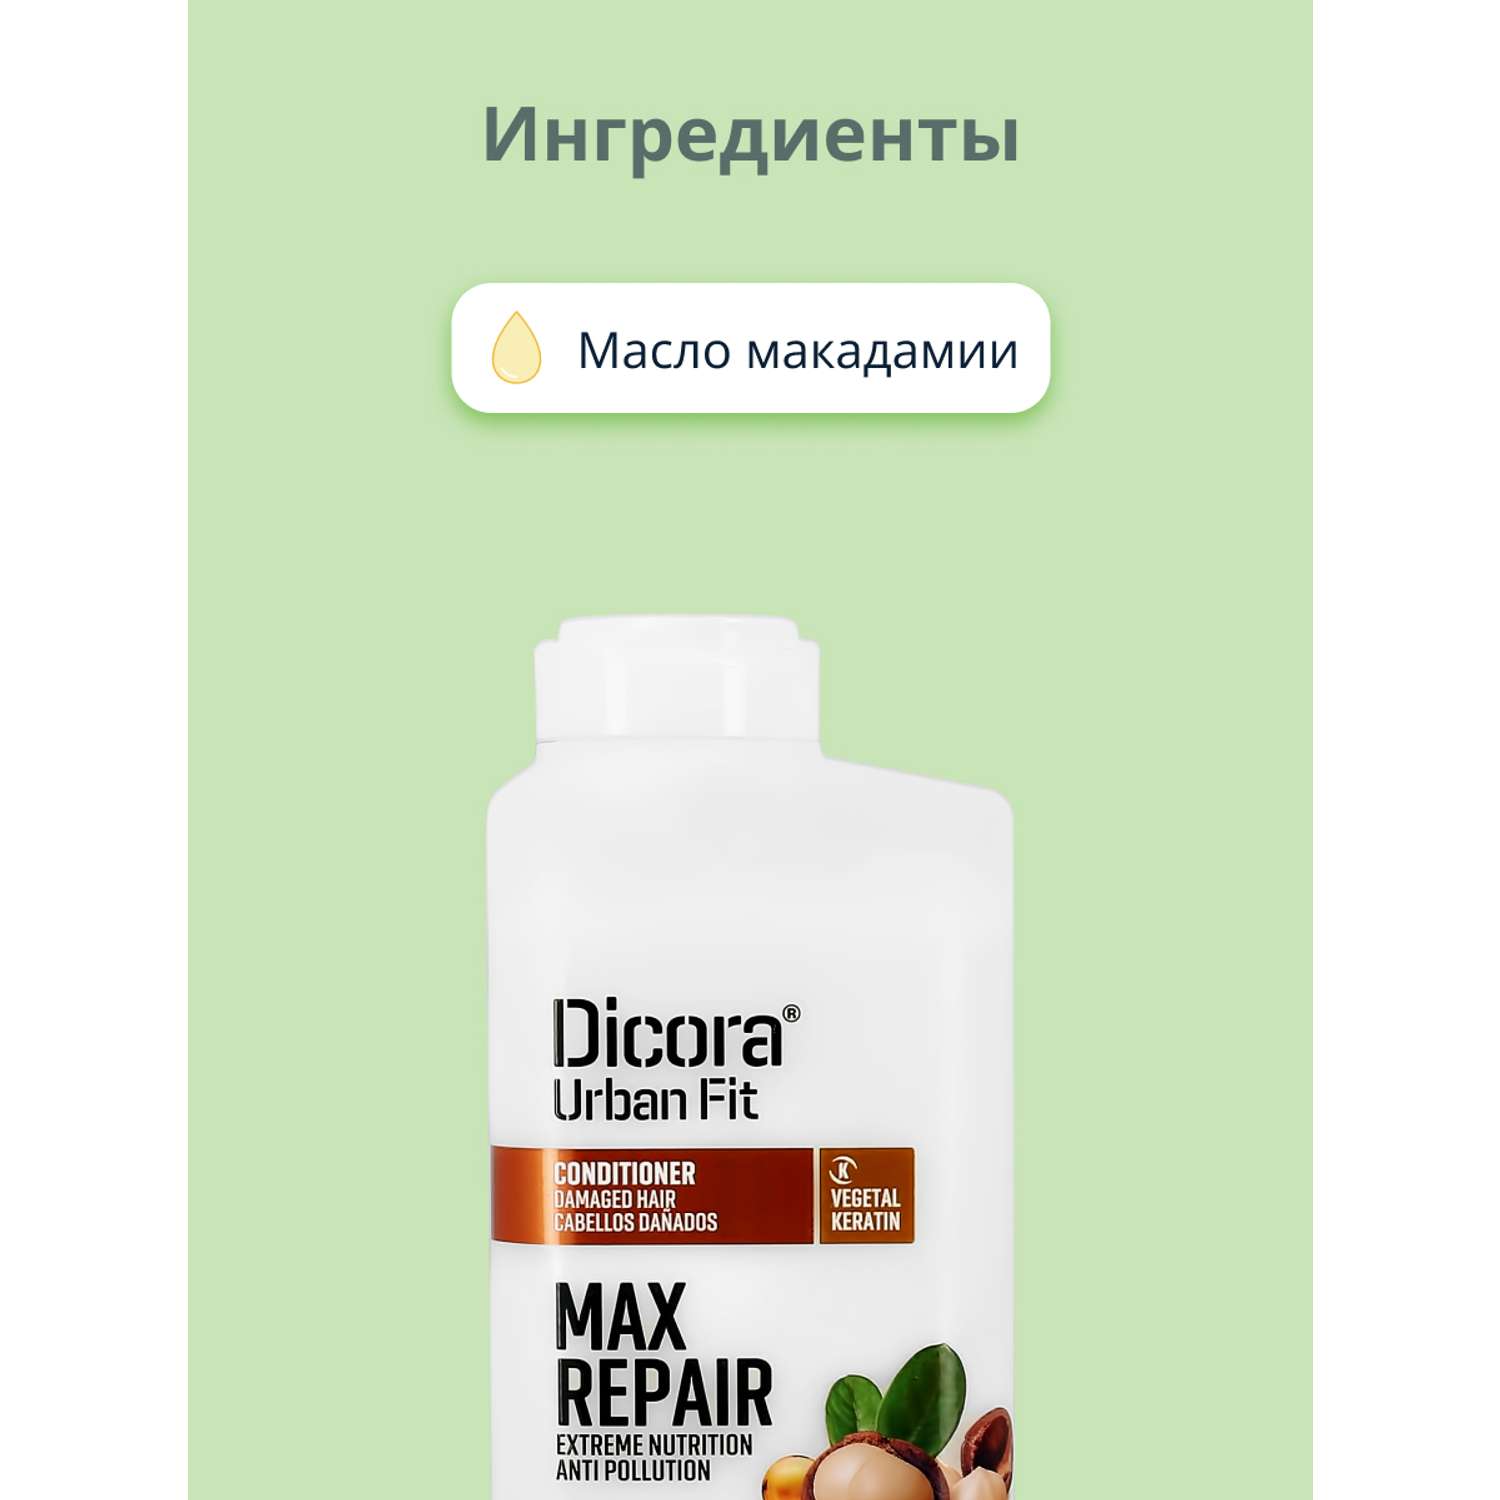 Кондиционер для волос DICORA URBAN FIT с маслом макадамии (экстра восстановление и питание) 400 мл - фото 2